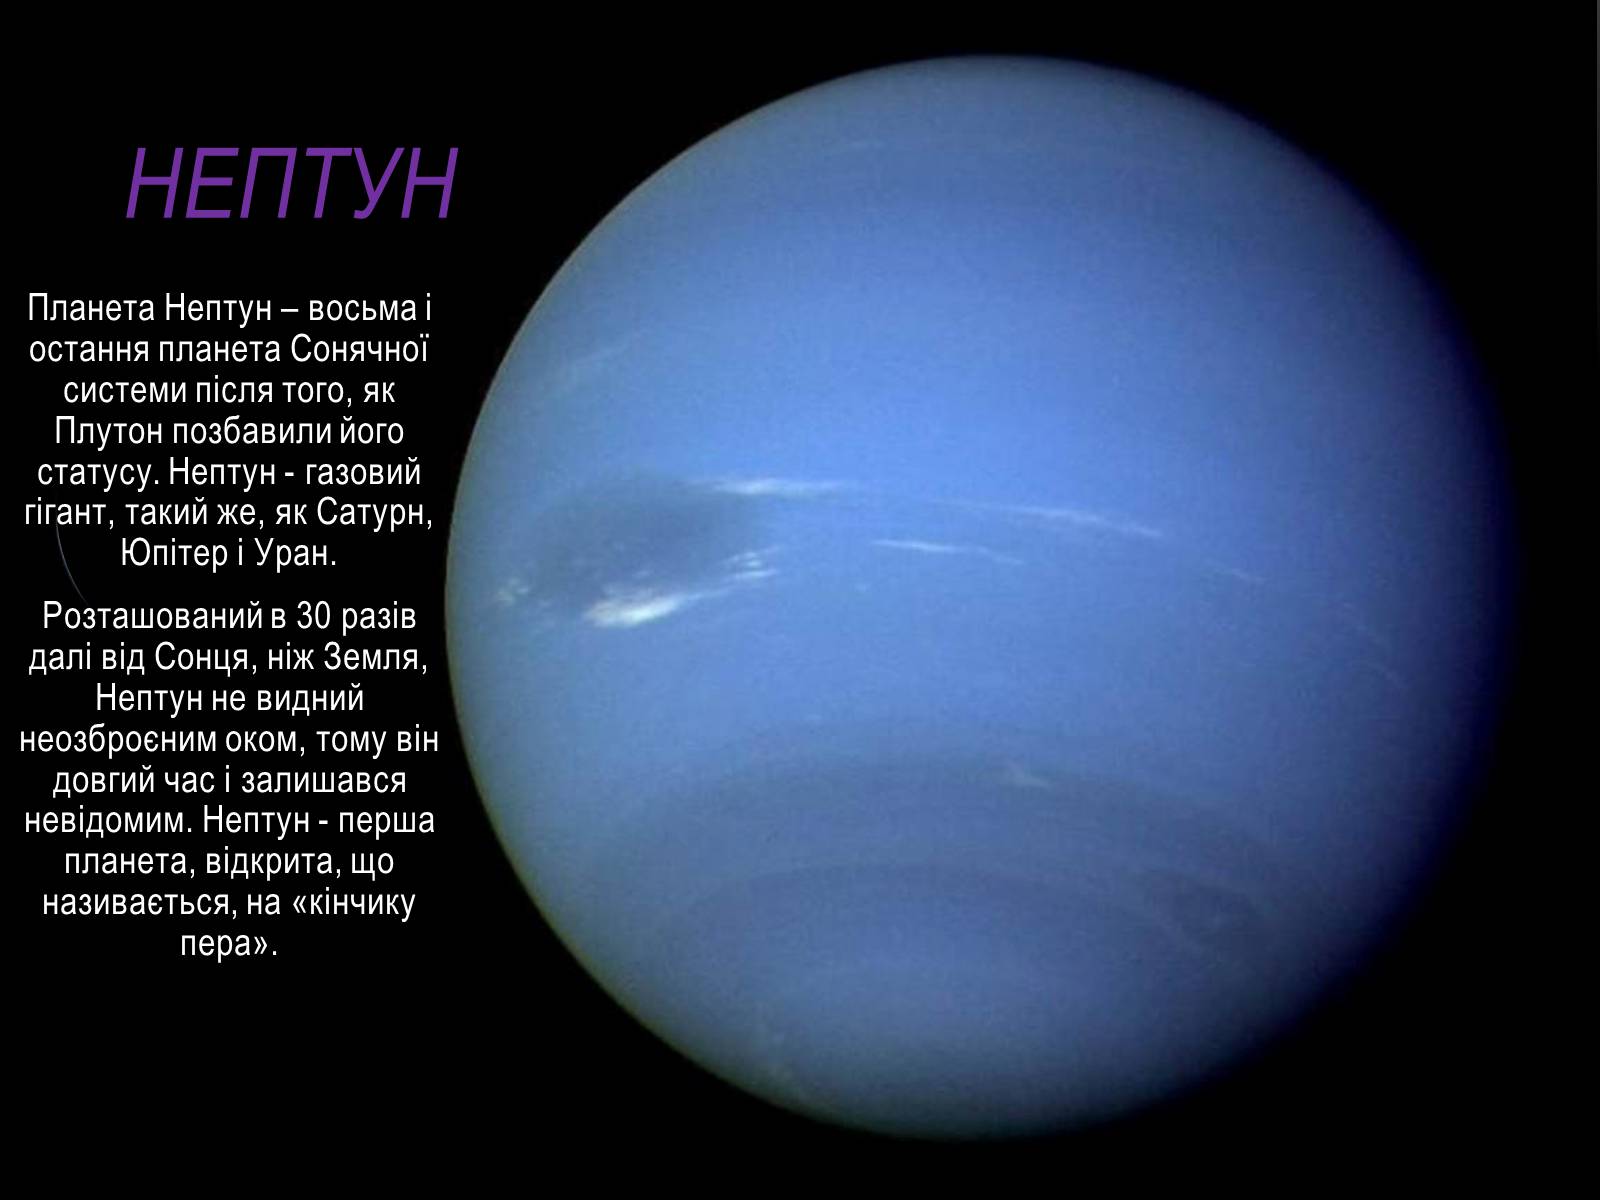 Как называется нептун. Нептун Планета описание для детей. Нептун Планета солнечной системы строение. Проект про планету Нептун. Нептун описание для детей.